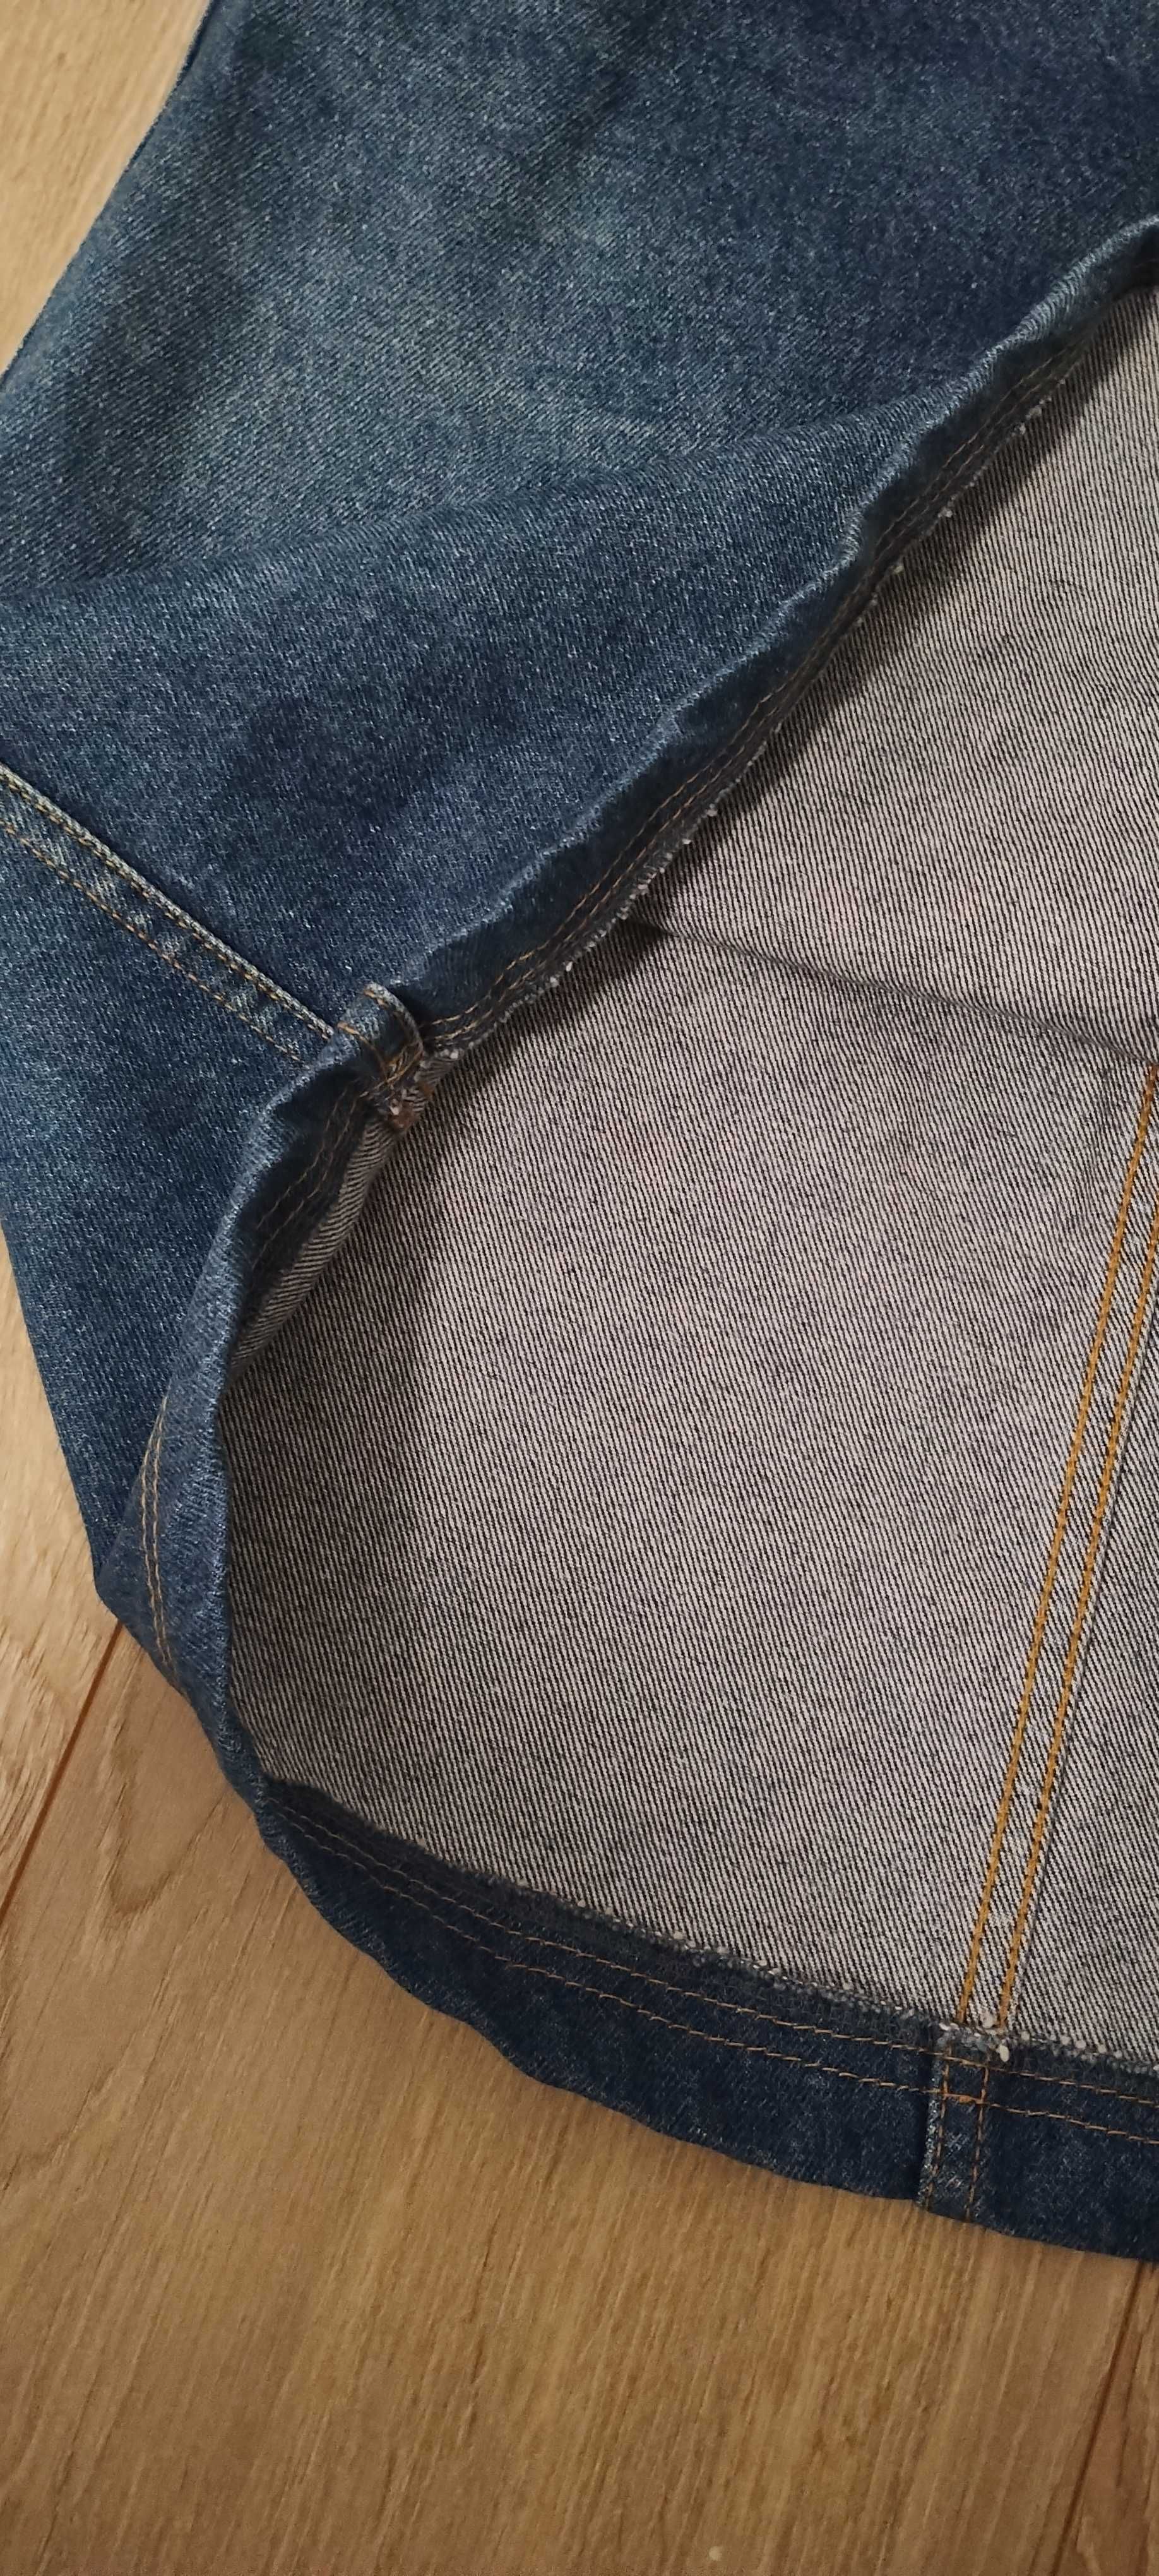 lee spódnica jeans dżins 38 vintage